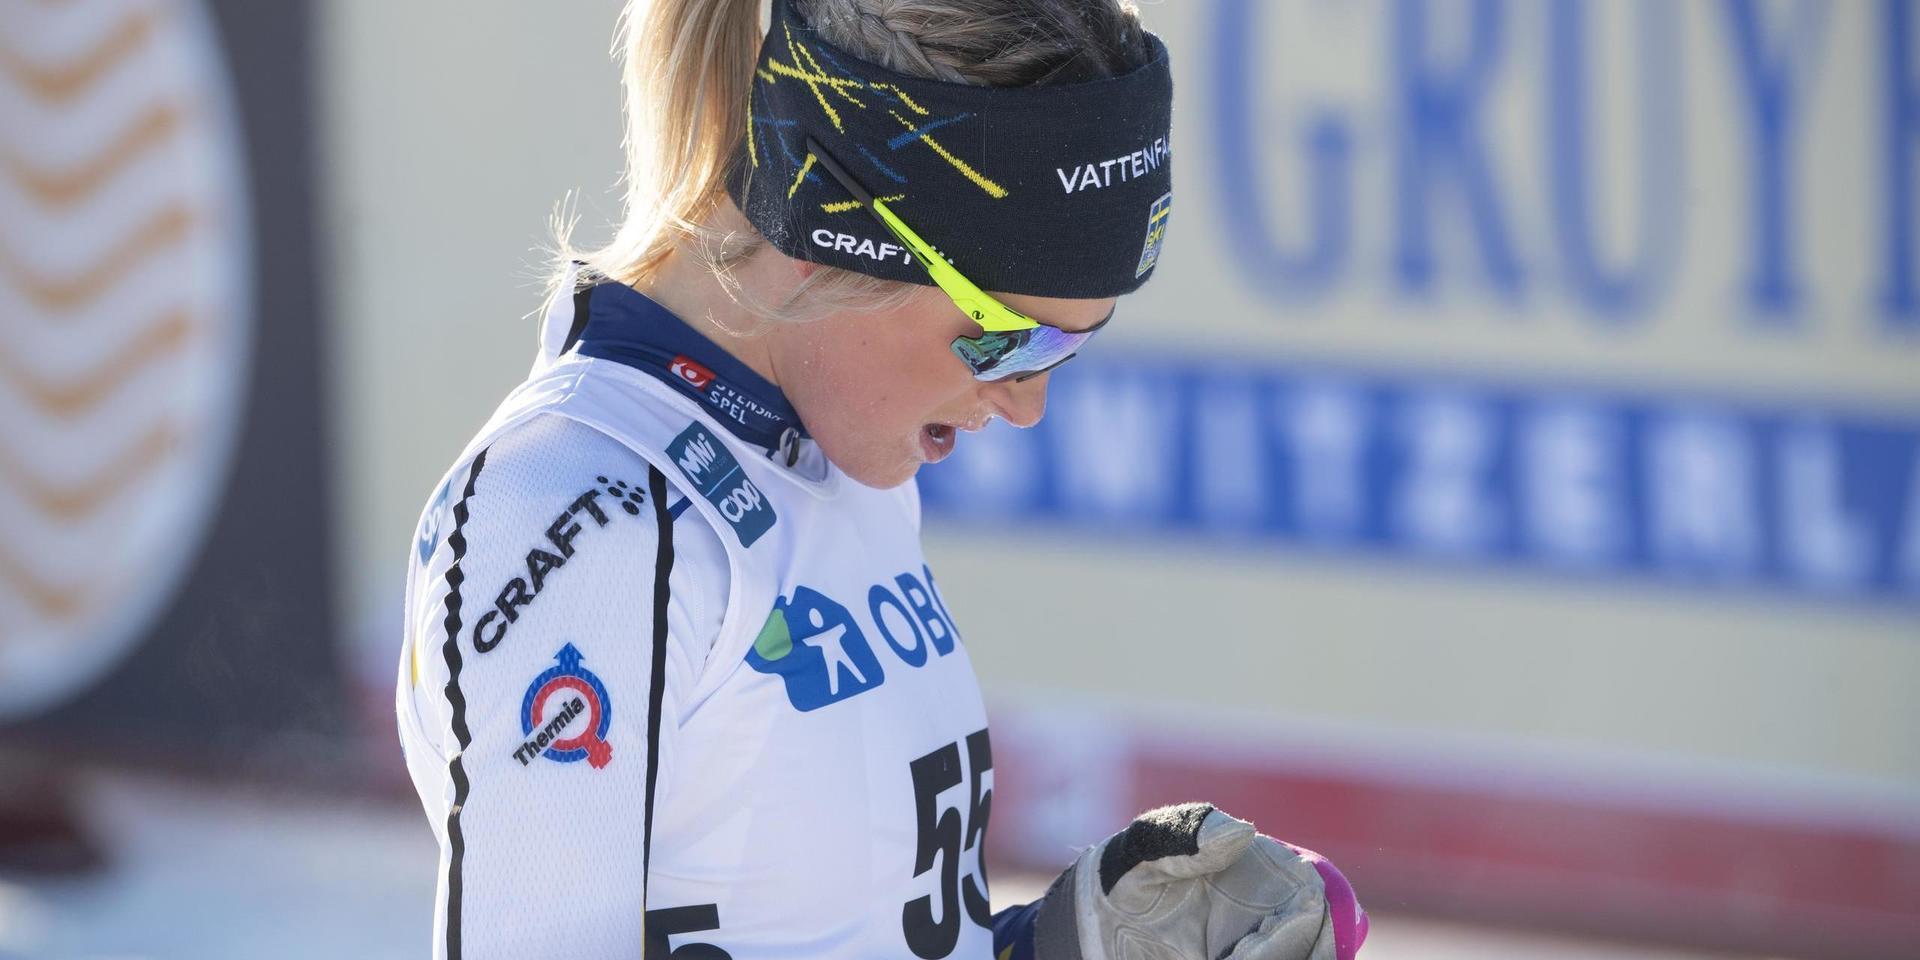 Frida Karlsson har haft problem efter Tour de Ski och hoppade av SM. Arkivbild.